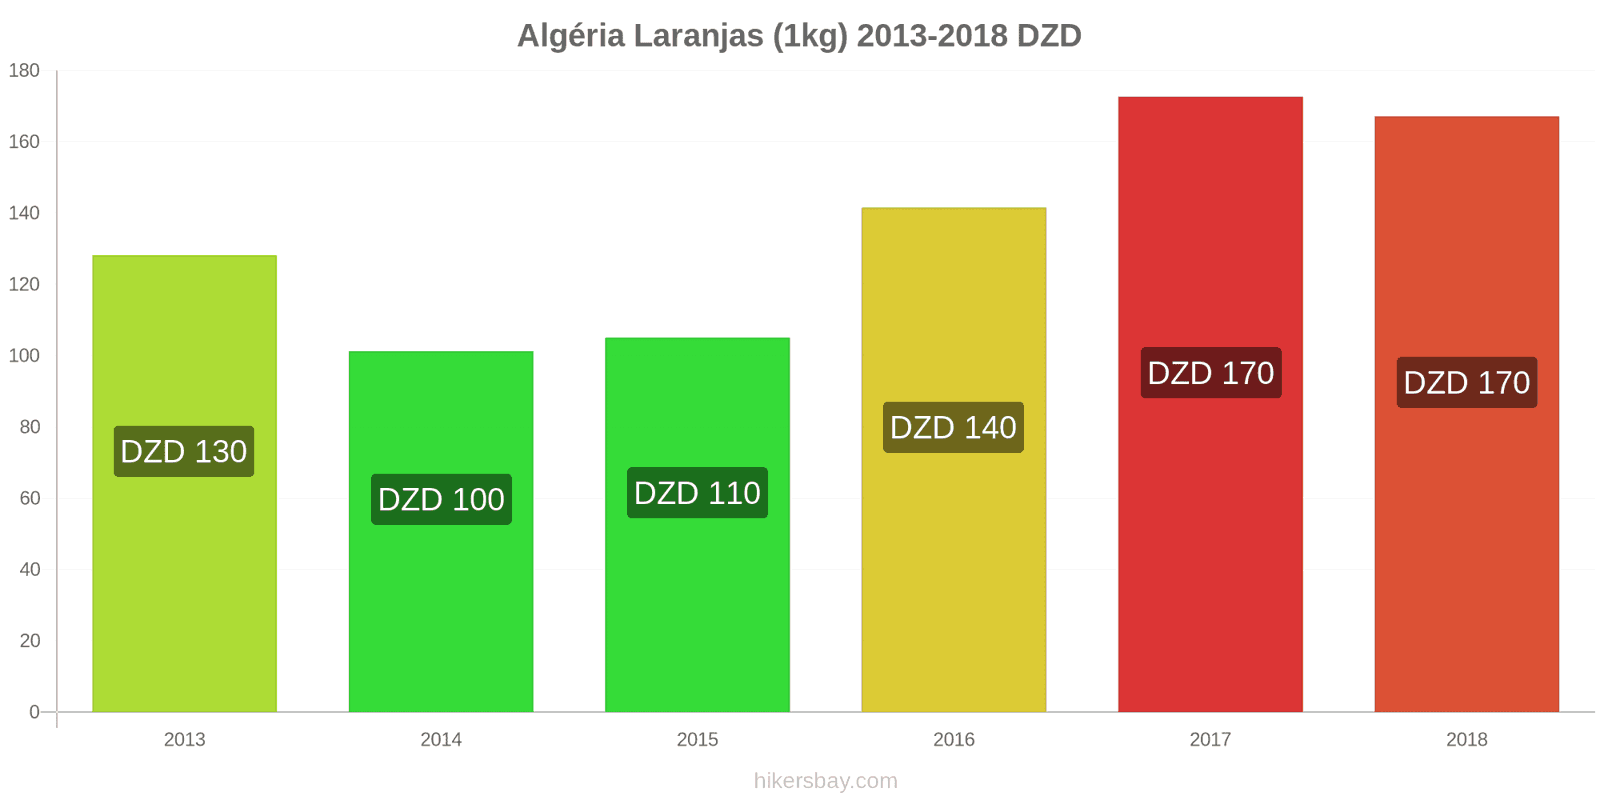 Algéria mudanças de preços Laranjas (1kg) hikersbay.com